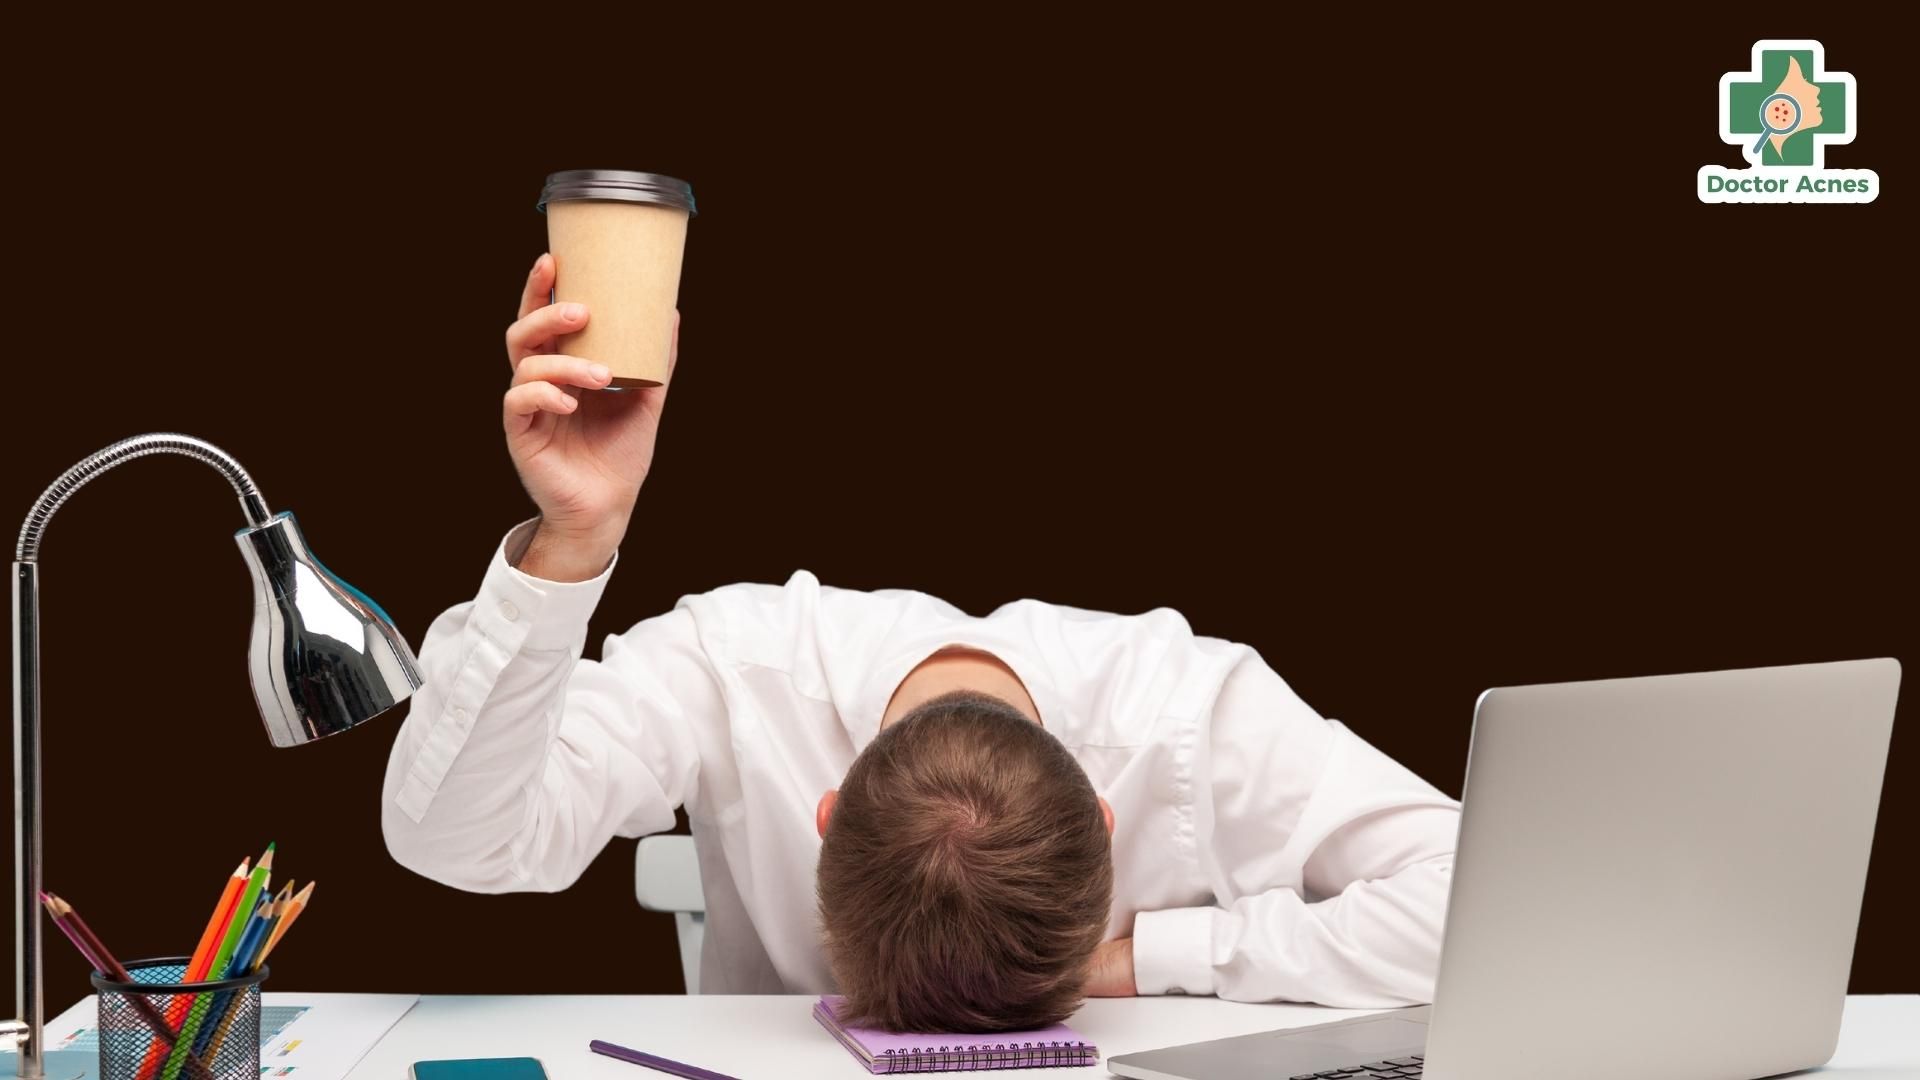 Cà phê có thể làm gián đoạn giấc ngủ - Doctor Acnes